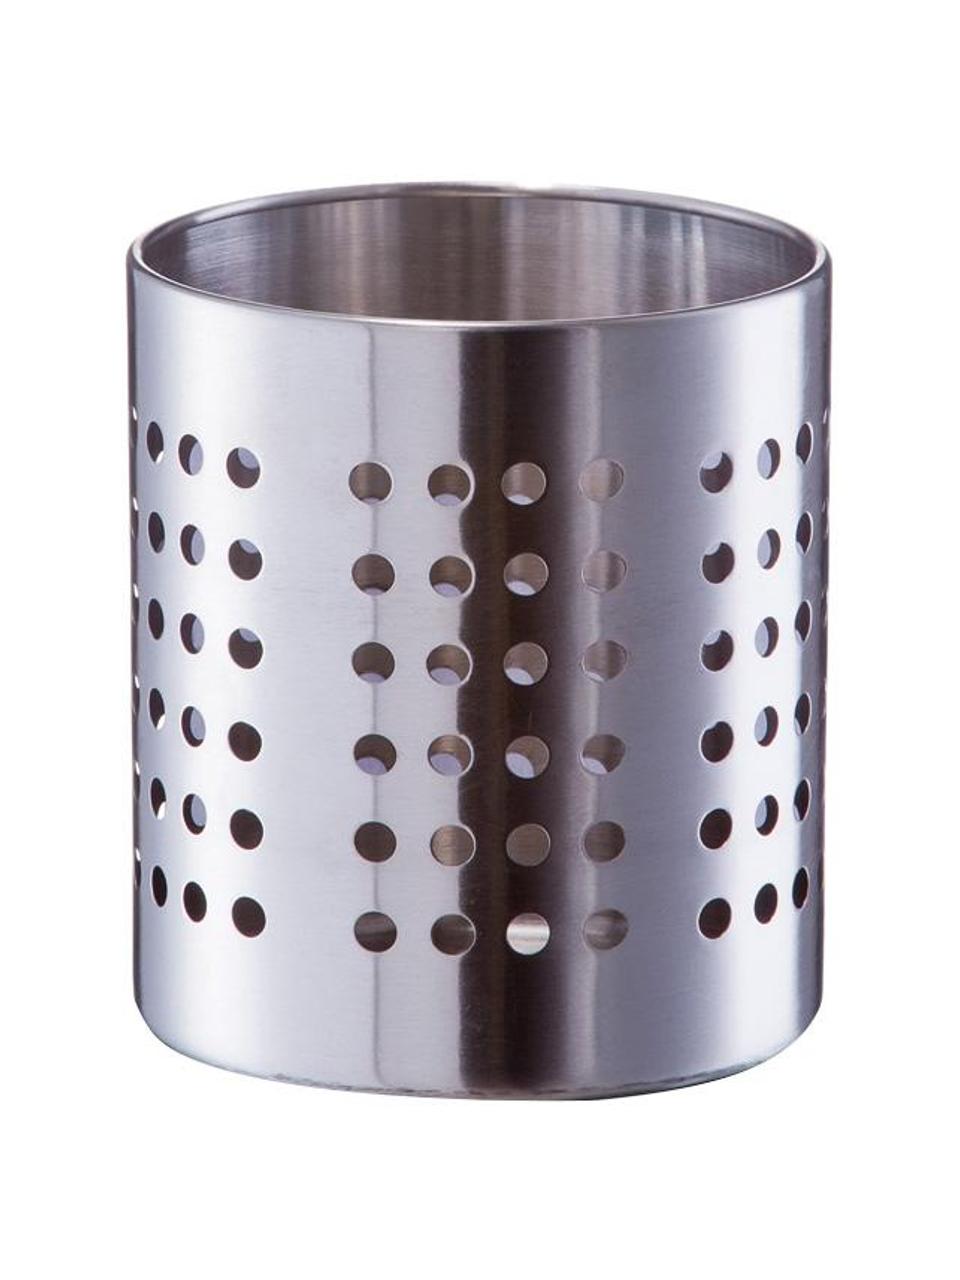 Porte ustensiles de cuisine en acier inoxydable Sejo, Acier inoxydable, Couleur argentée, Ø 12 x haut. 14 cm